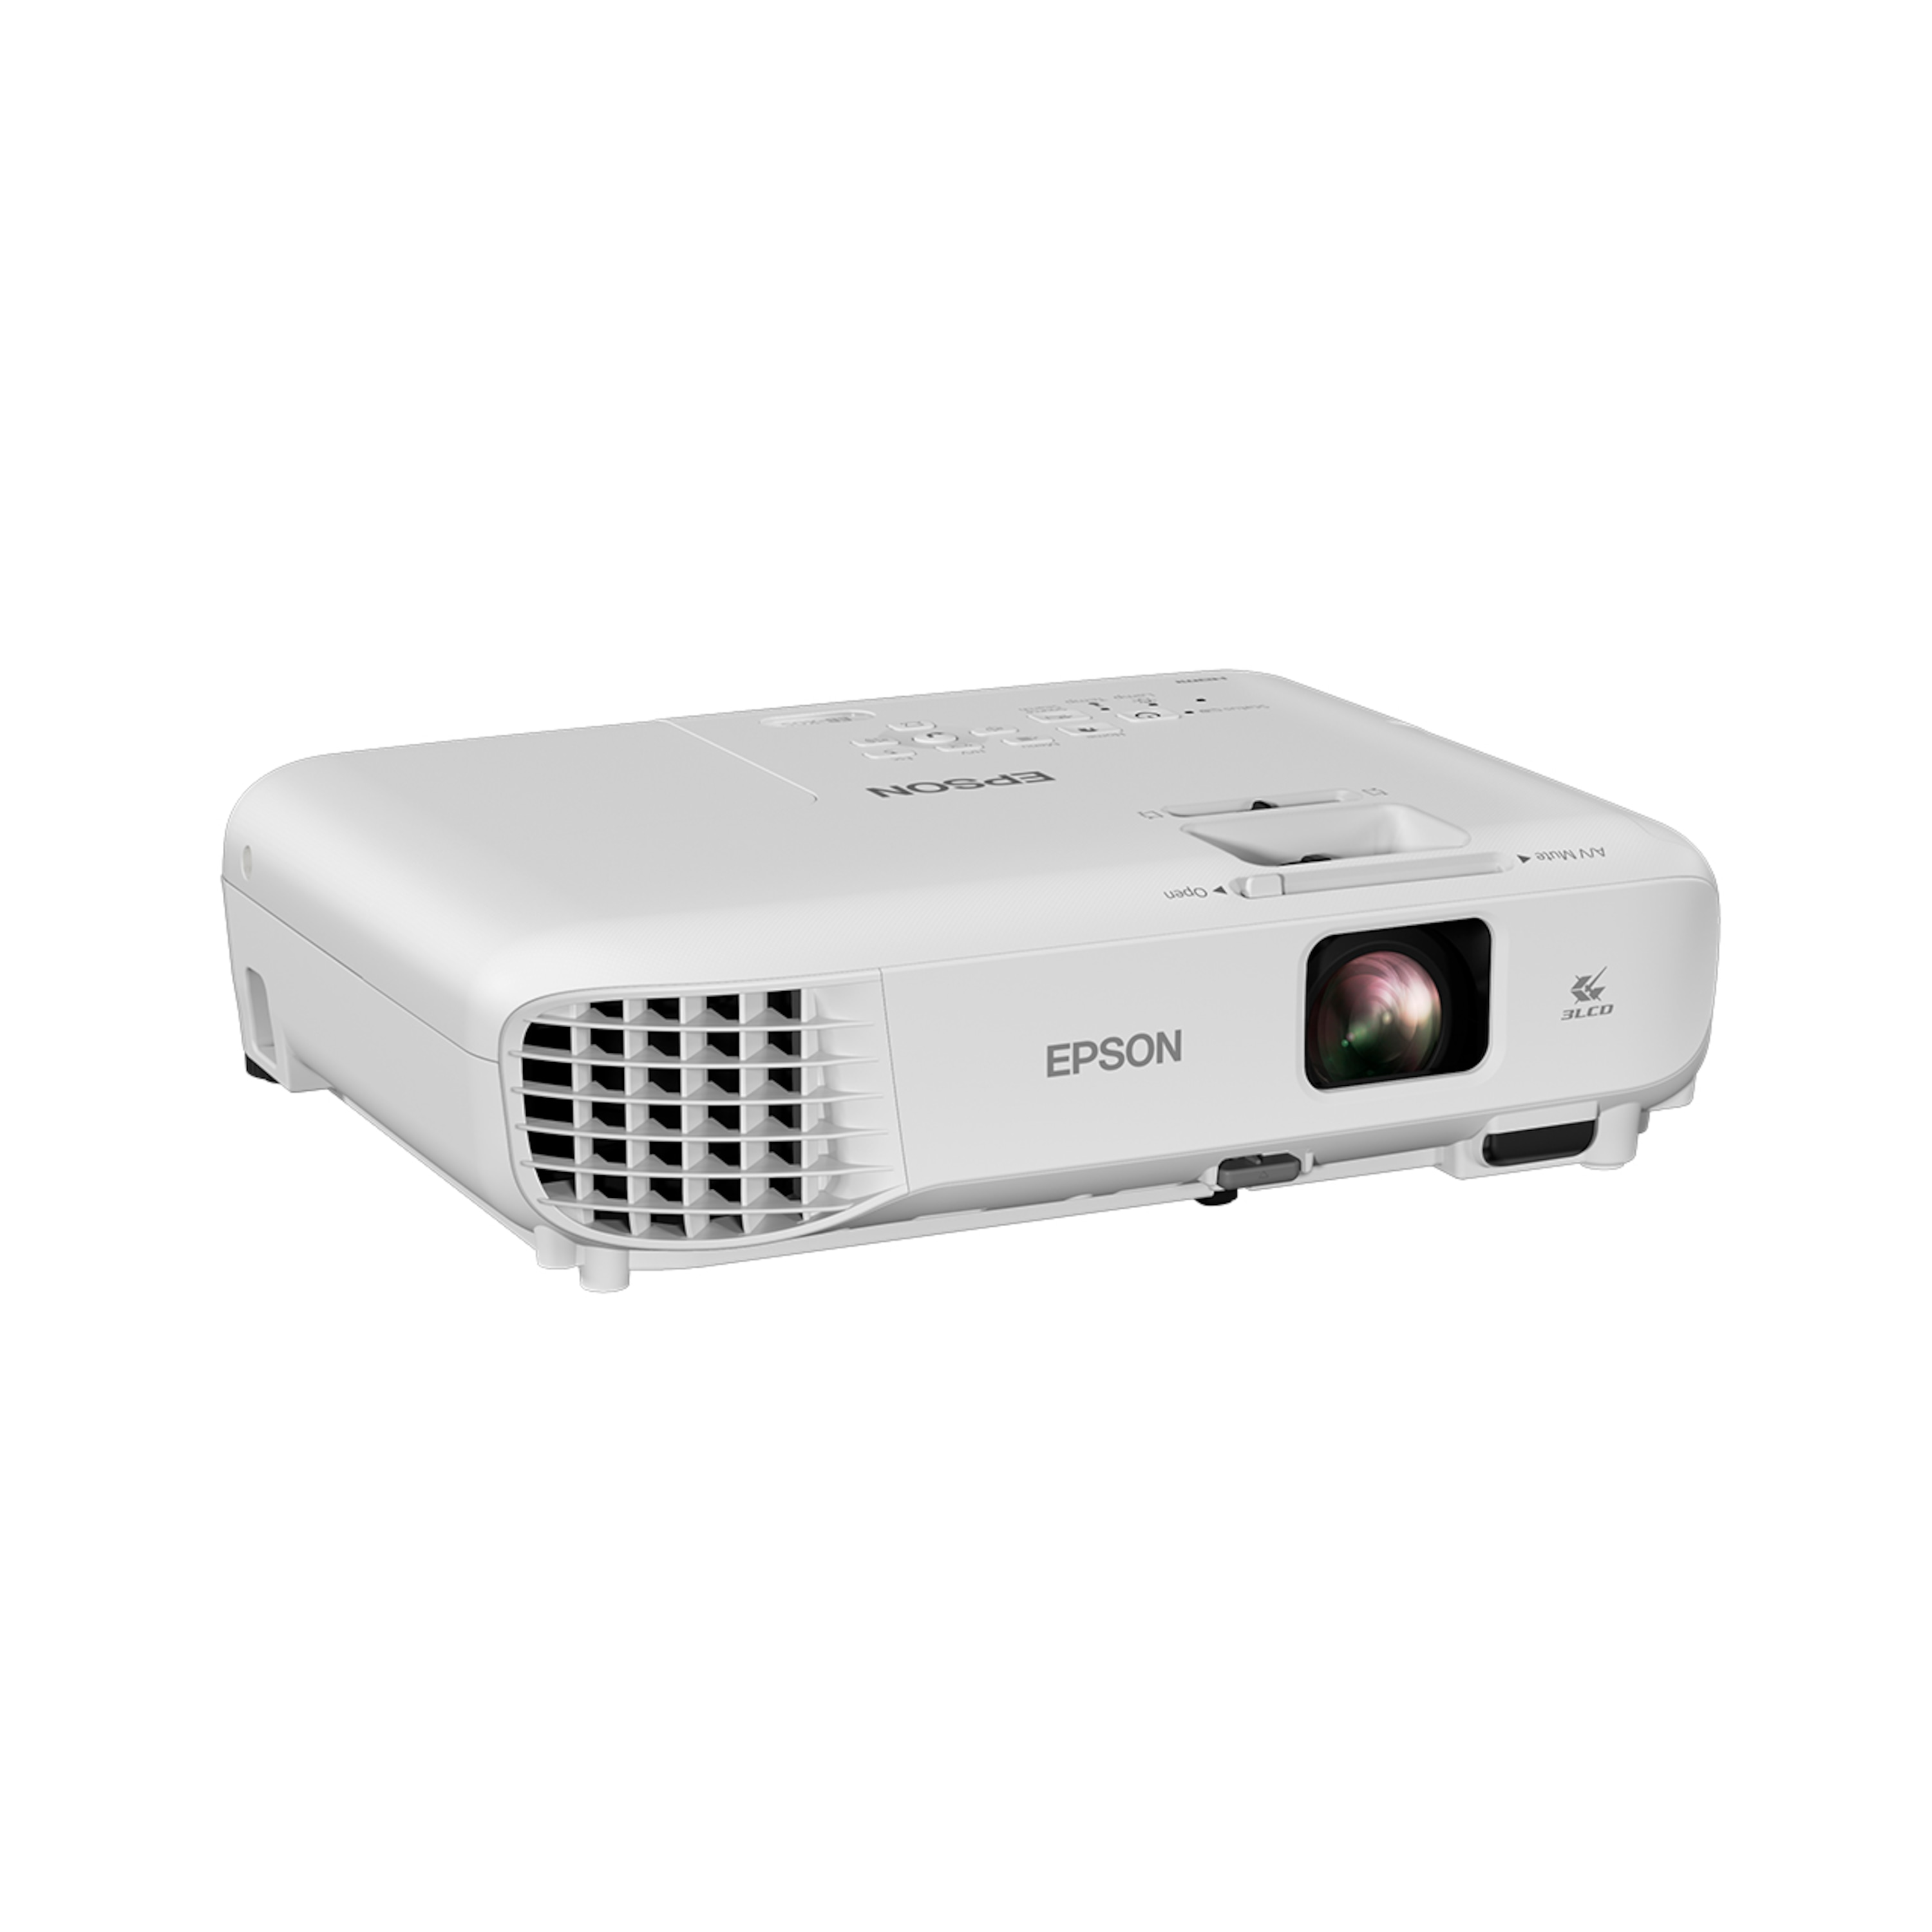 EB W05 Projector | WXGA-projector voor thuis of op kantoor | 3300 lumen | 3LCD-technologie | tot 8,13 m (320'') schermdiagonaal